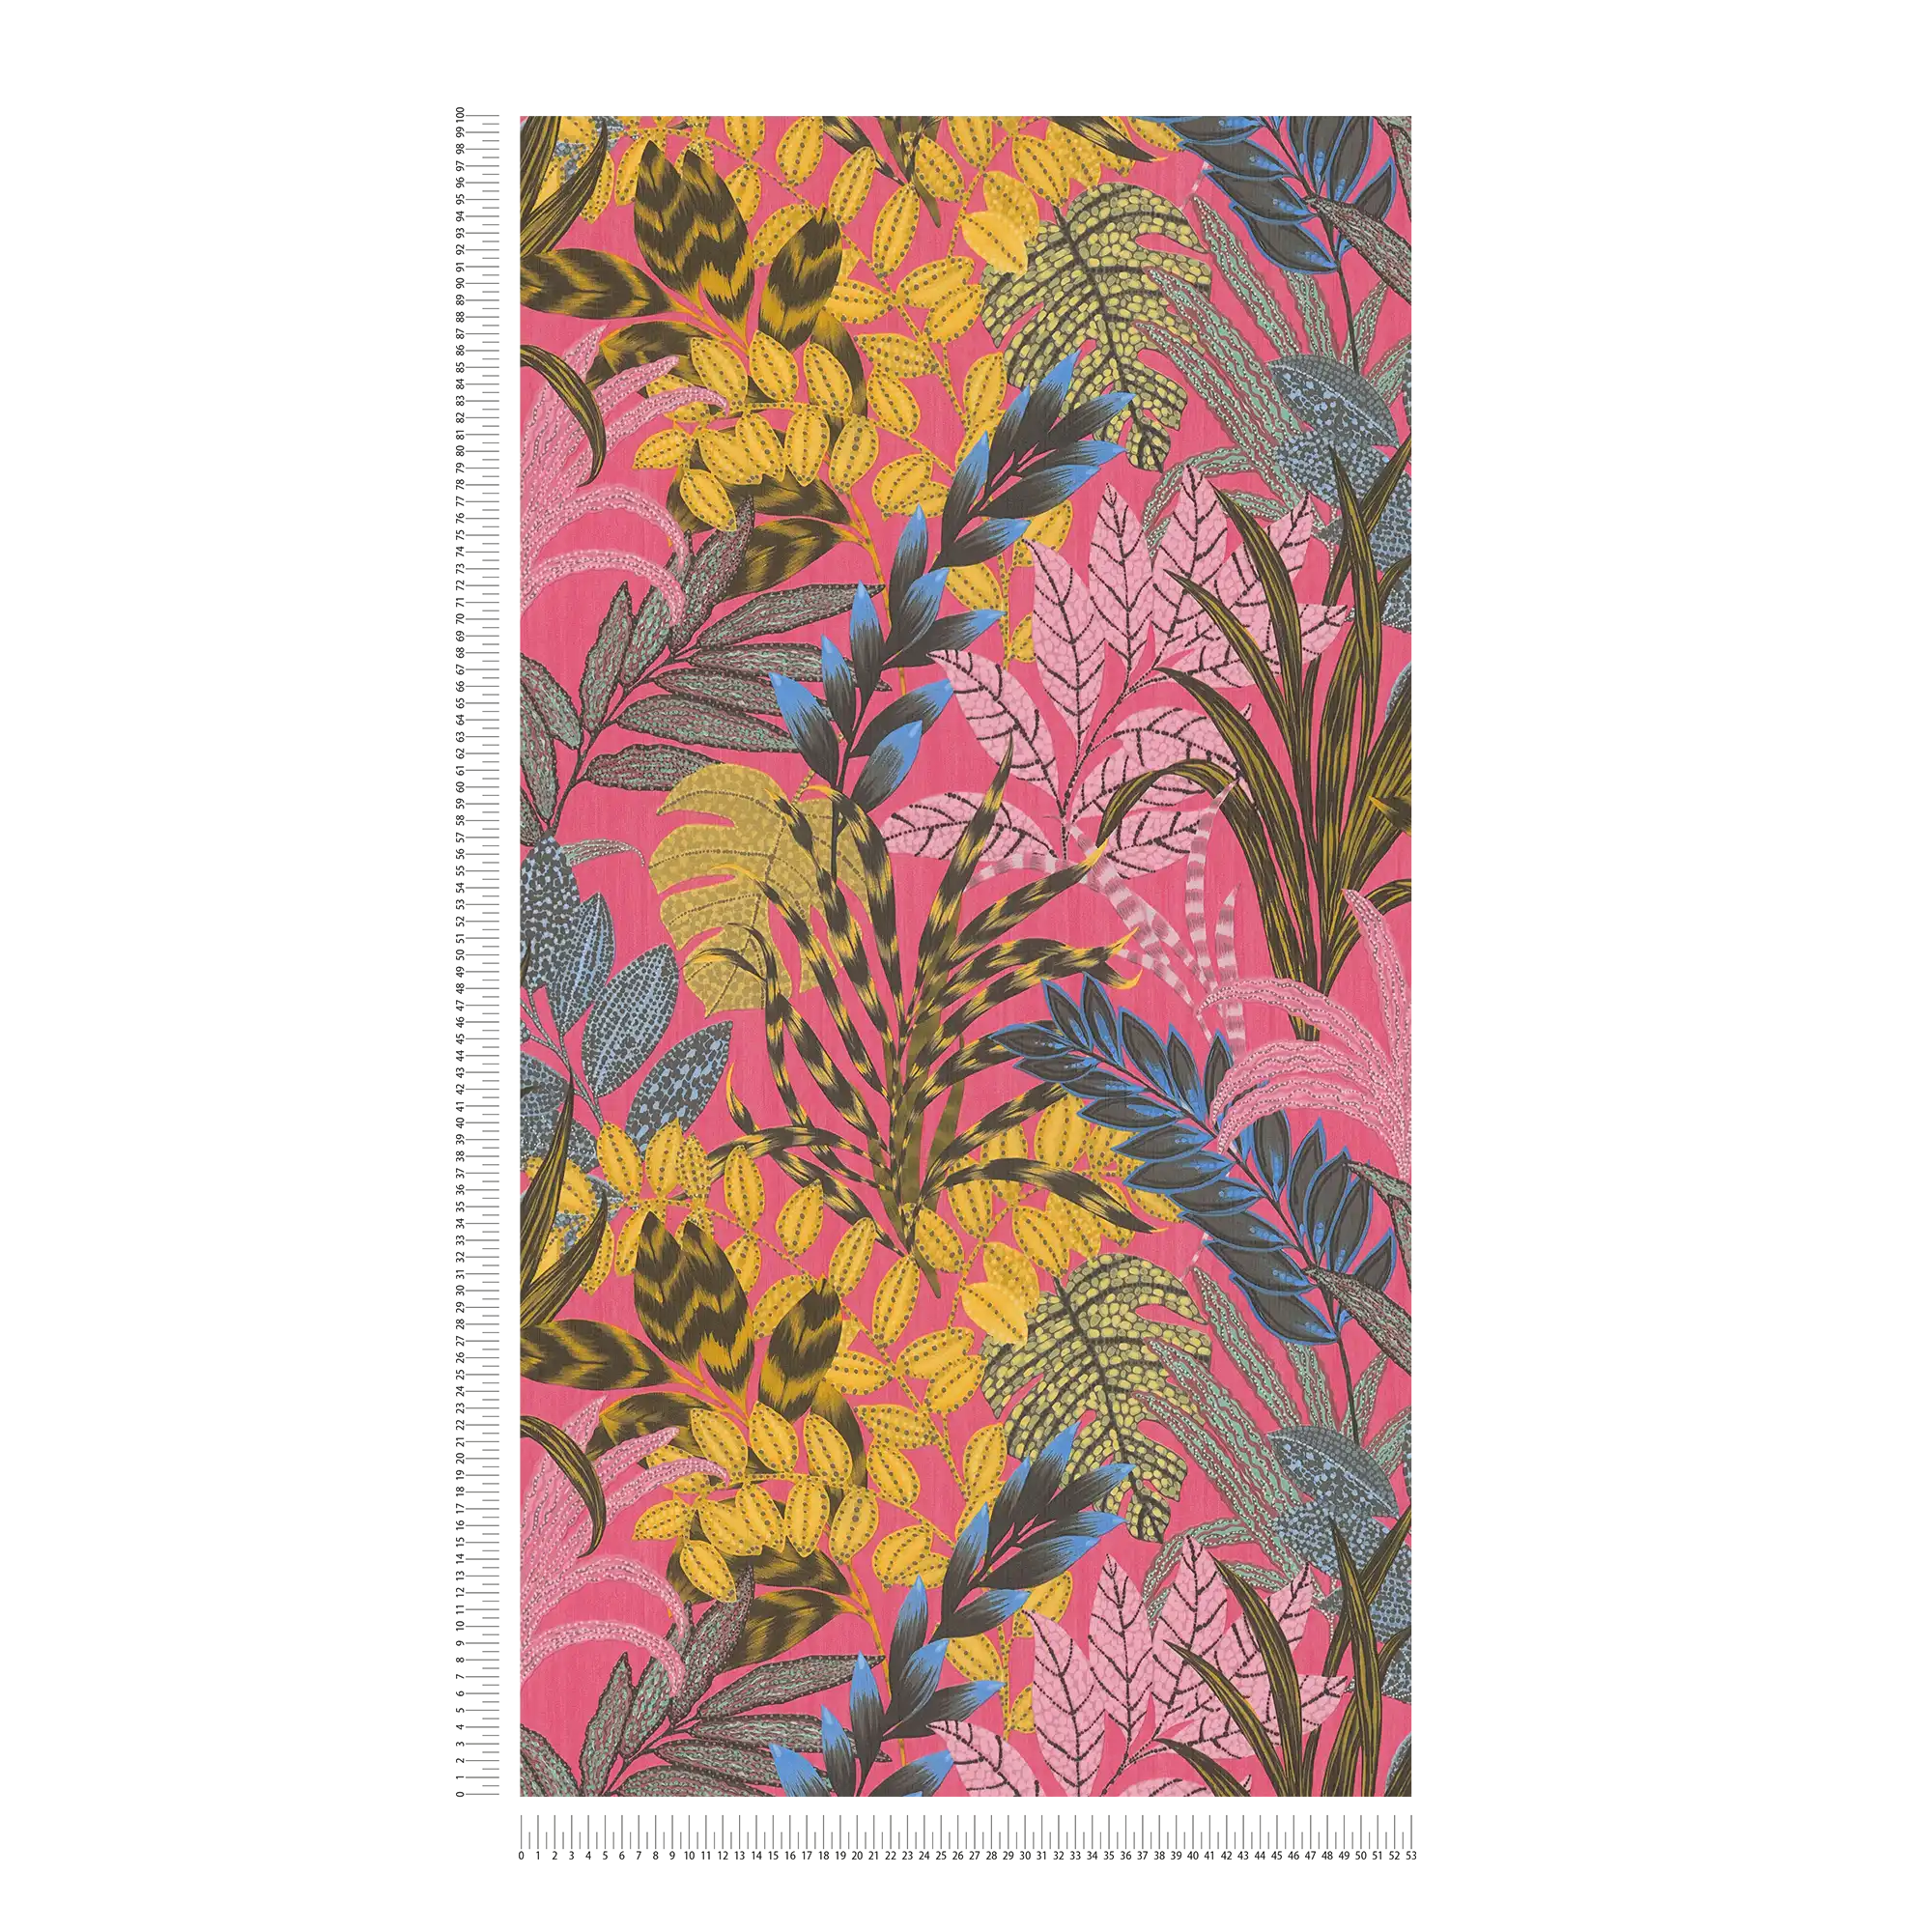             Carta da parati colorata in tessuto non tessuto con motivo a foglie e struttura in rilievo - multicolore, giallo, rosa
        